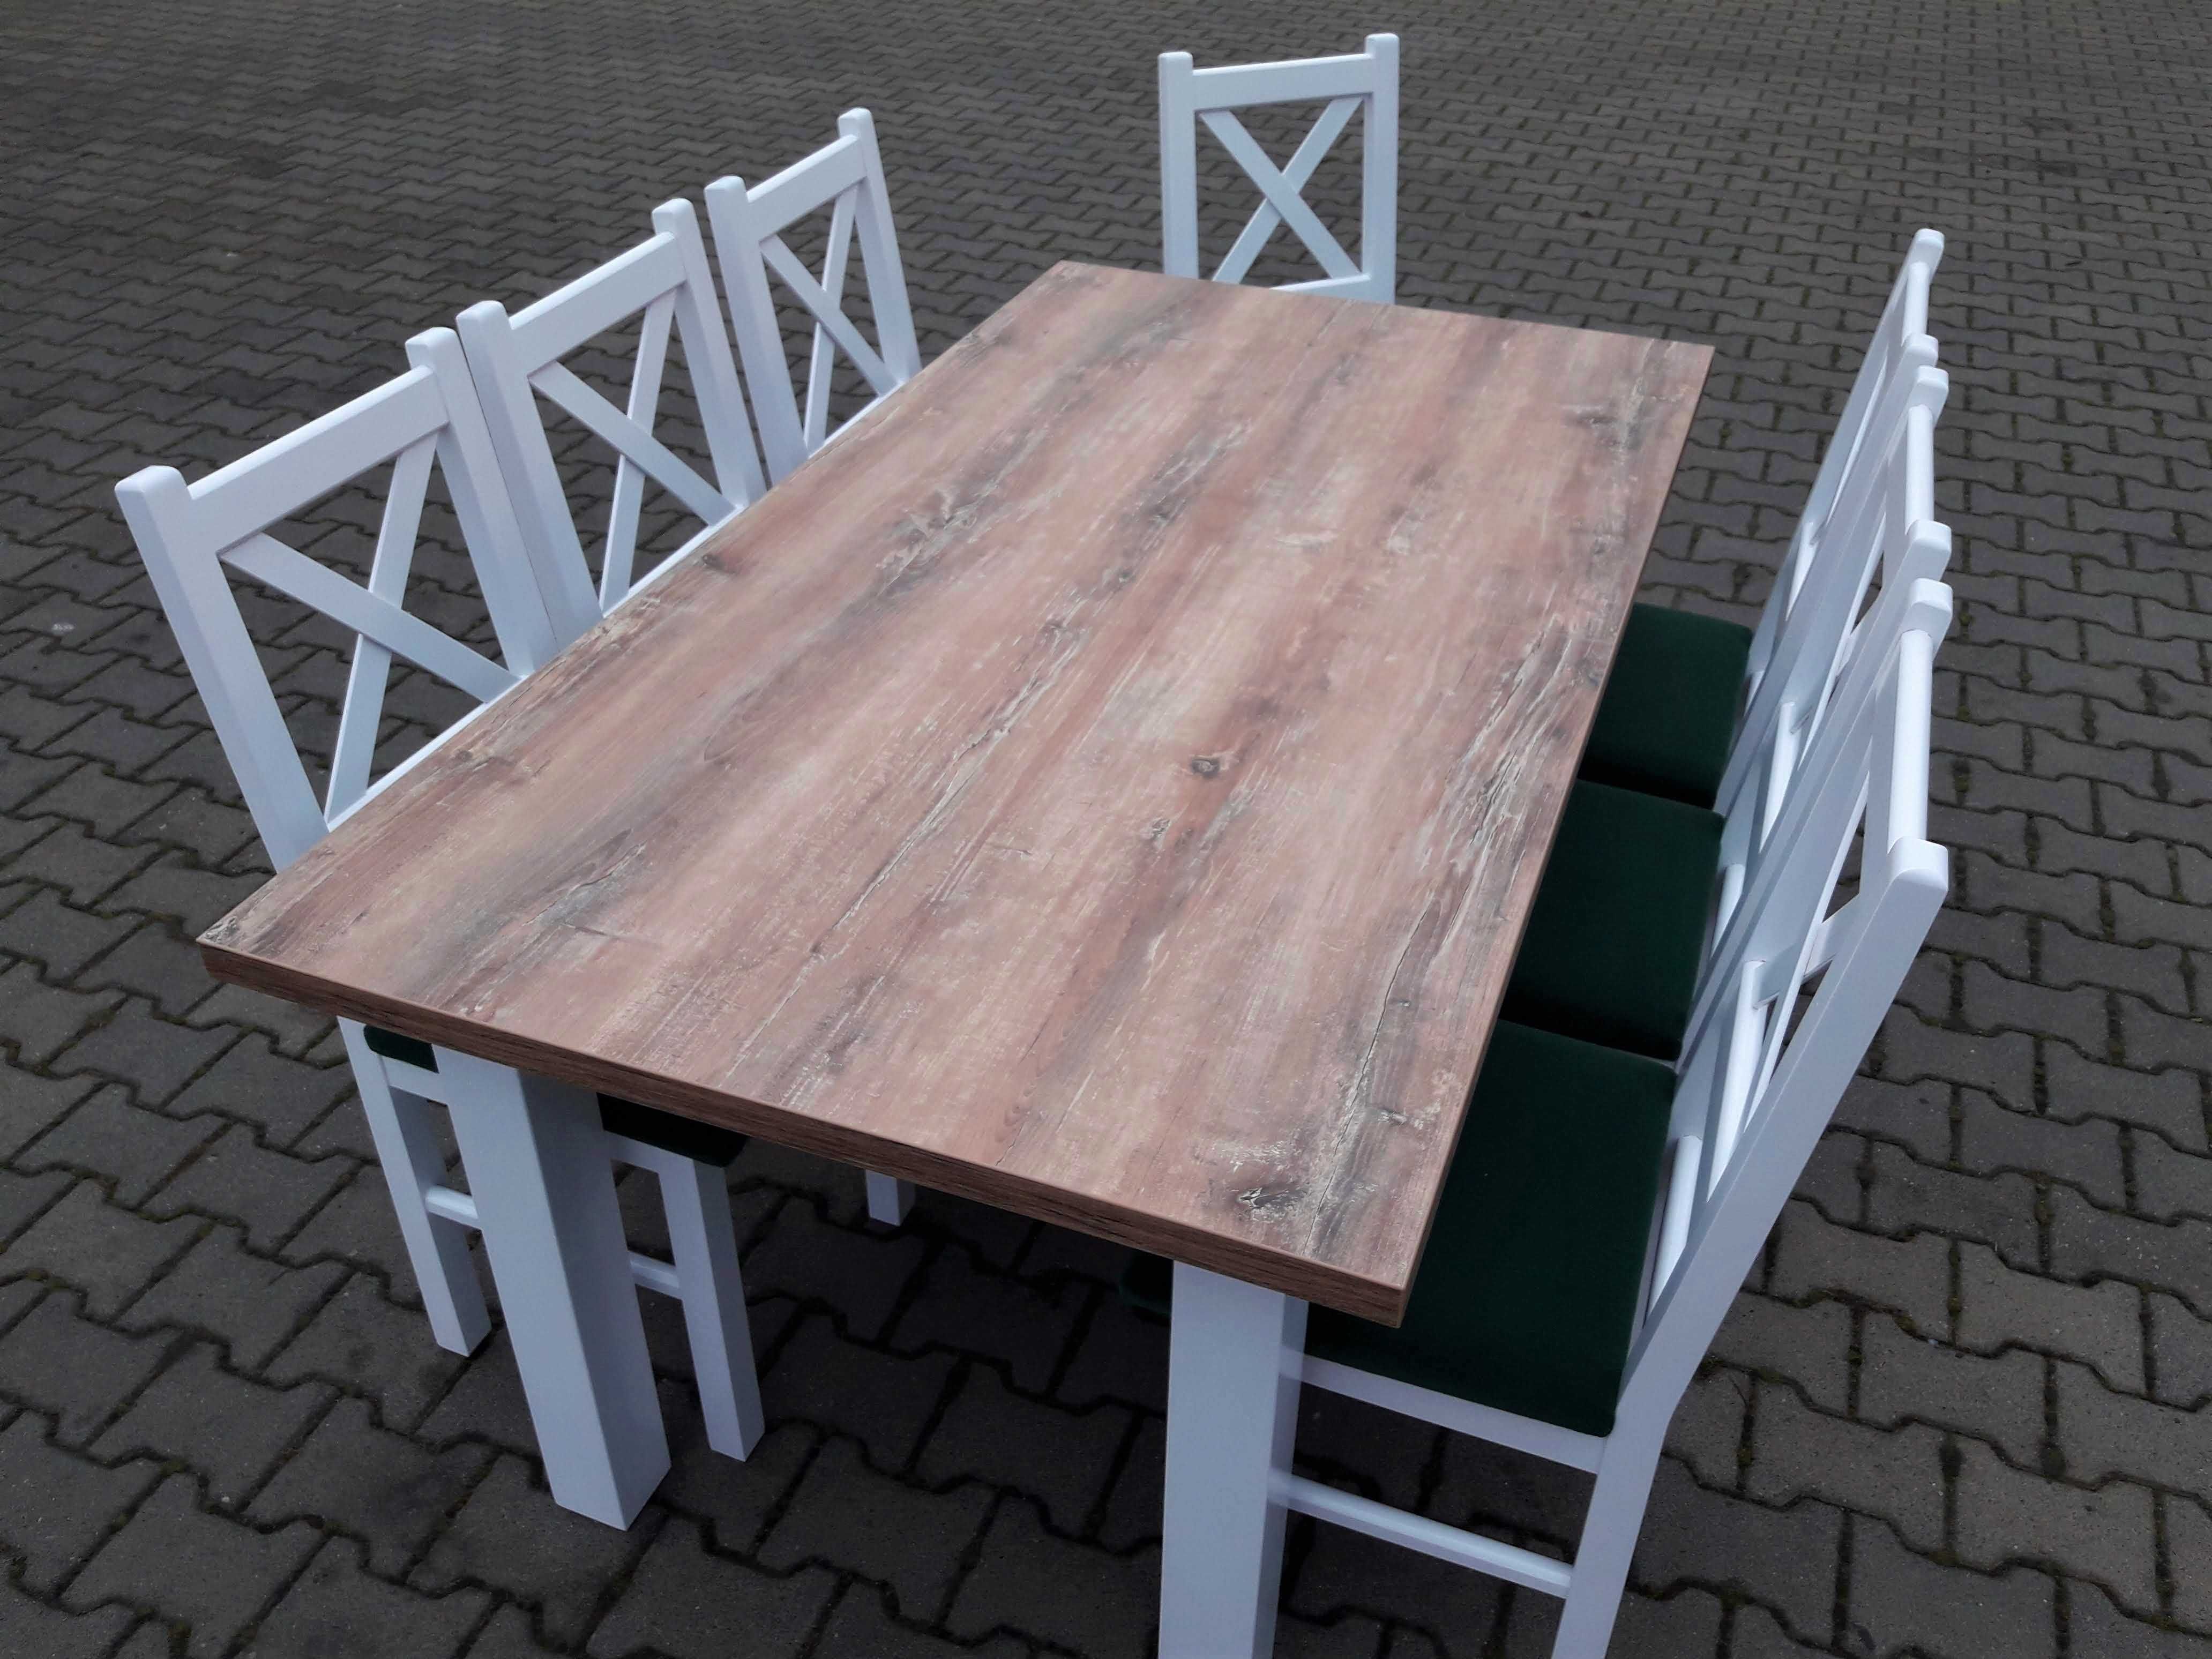 Stol 185/244x95+8 krzesel krzyzowe biale+blat drewno retro